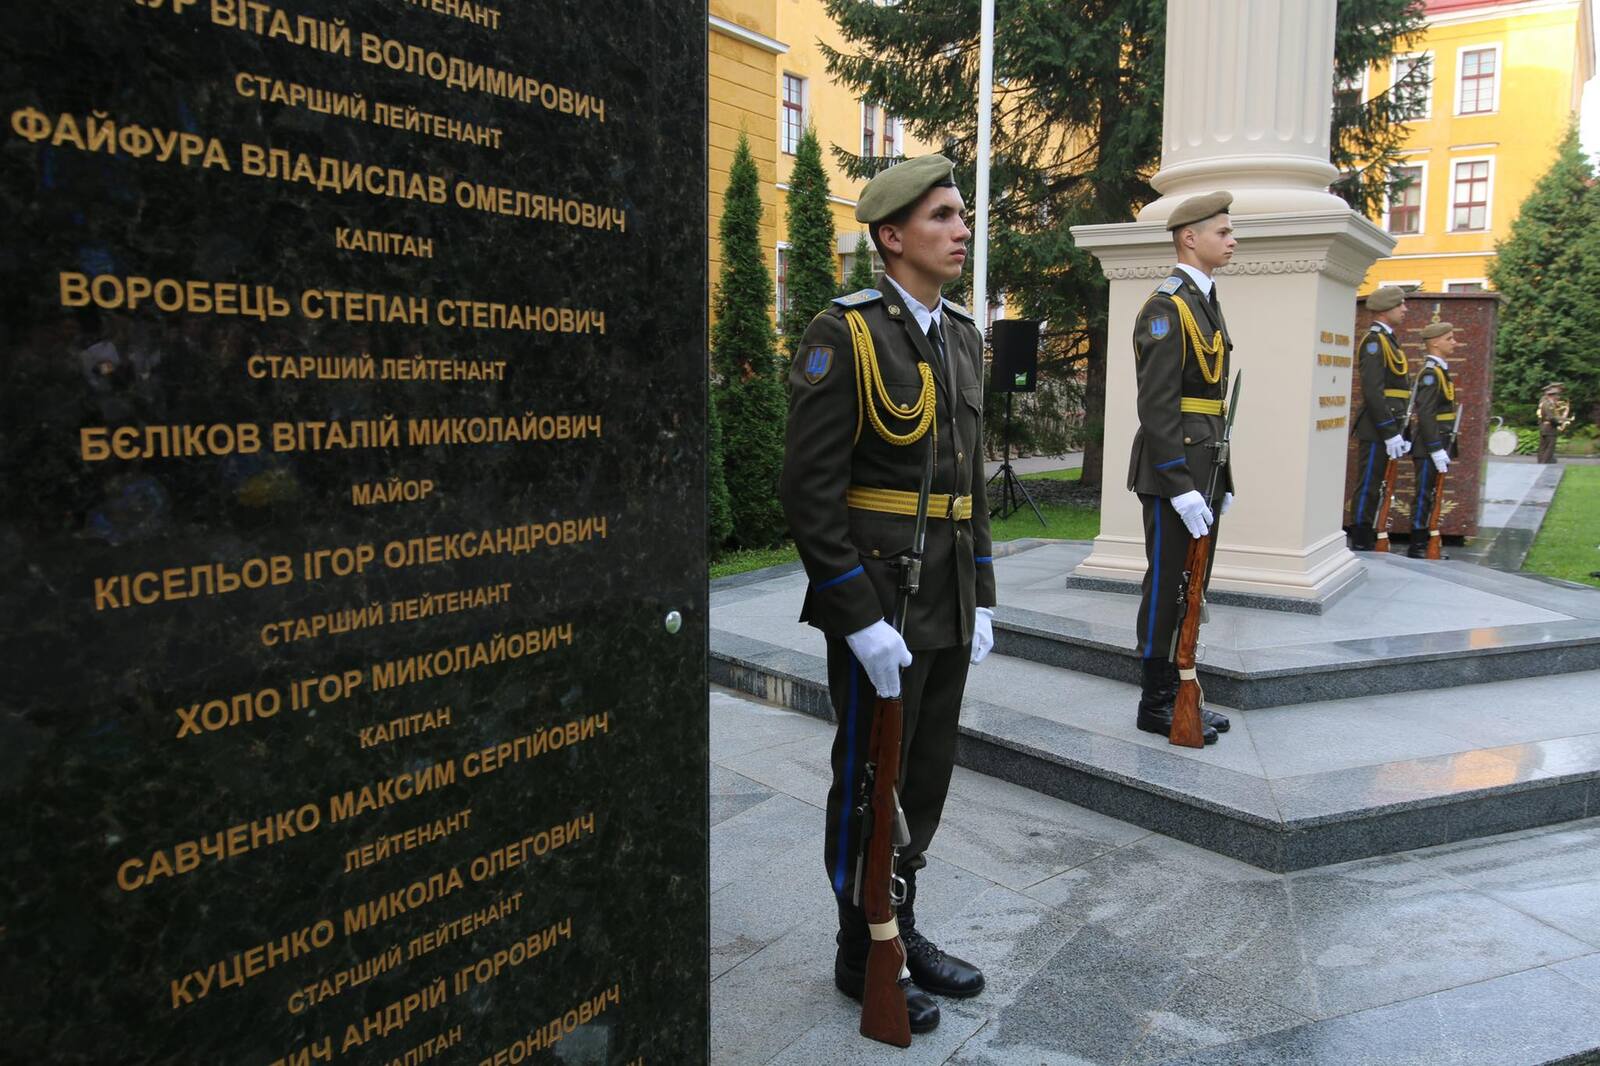 Зв шість місяців війни з РФ загинули понад 130 випускників Академії сухопутних військ